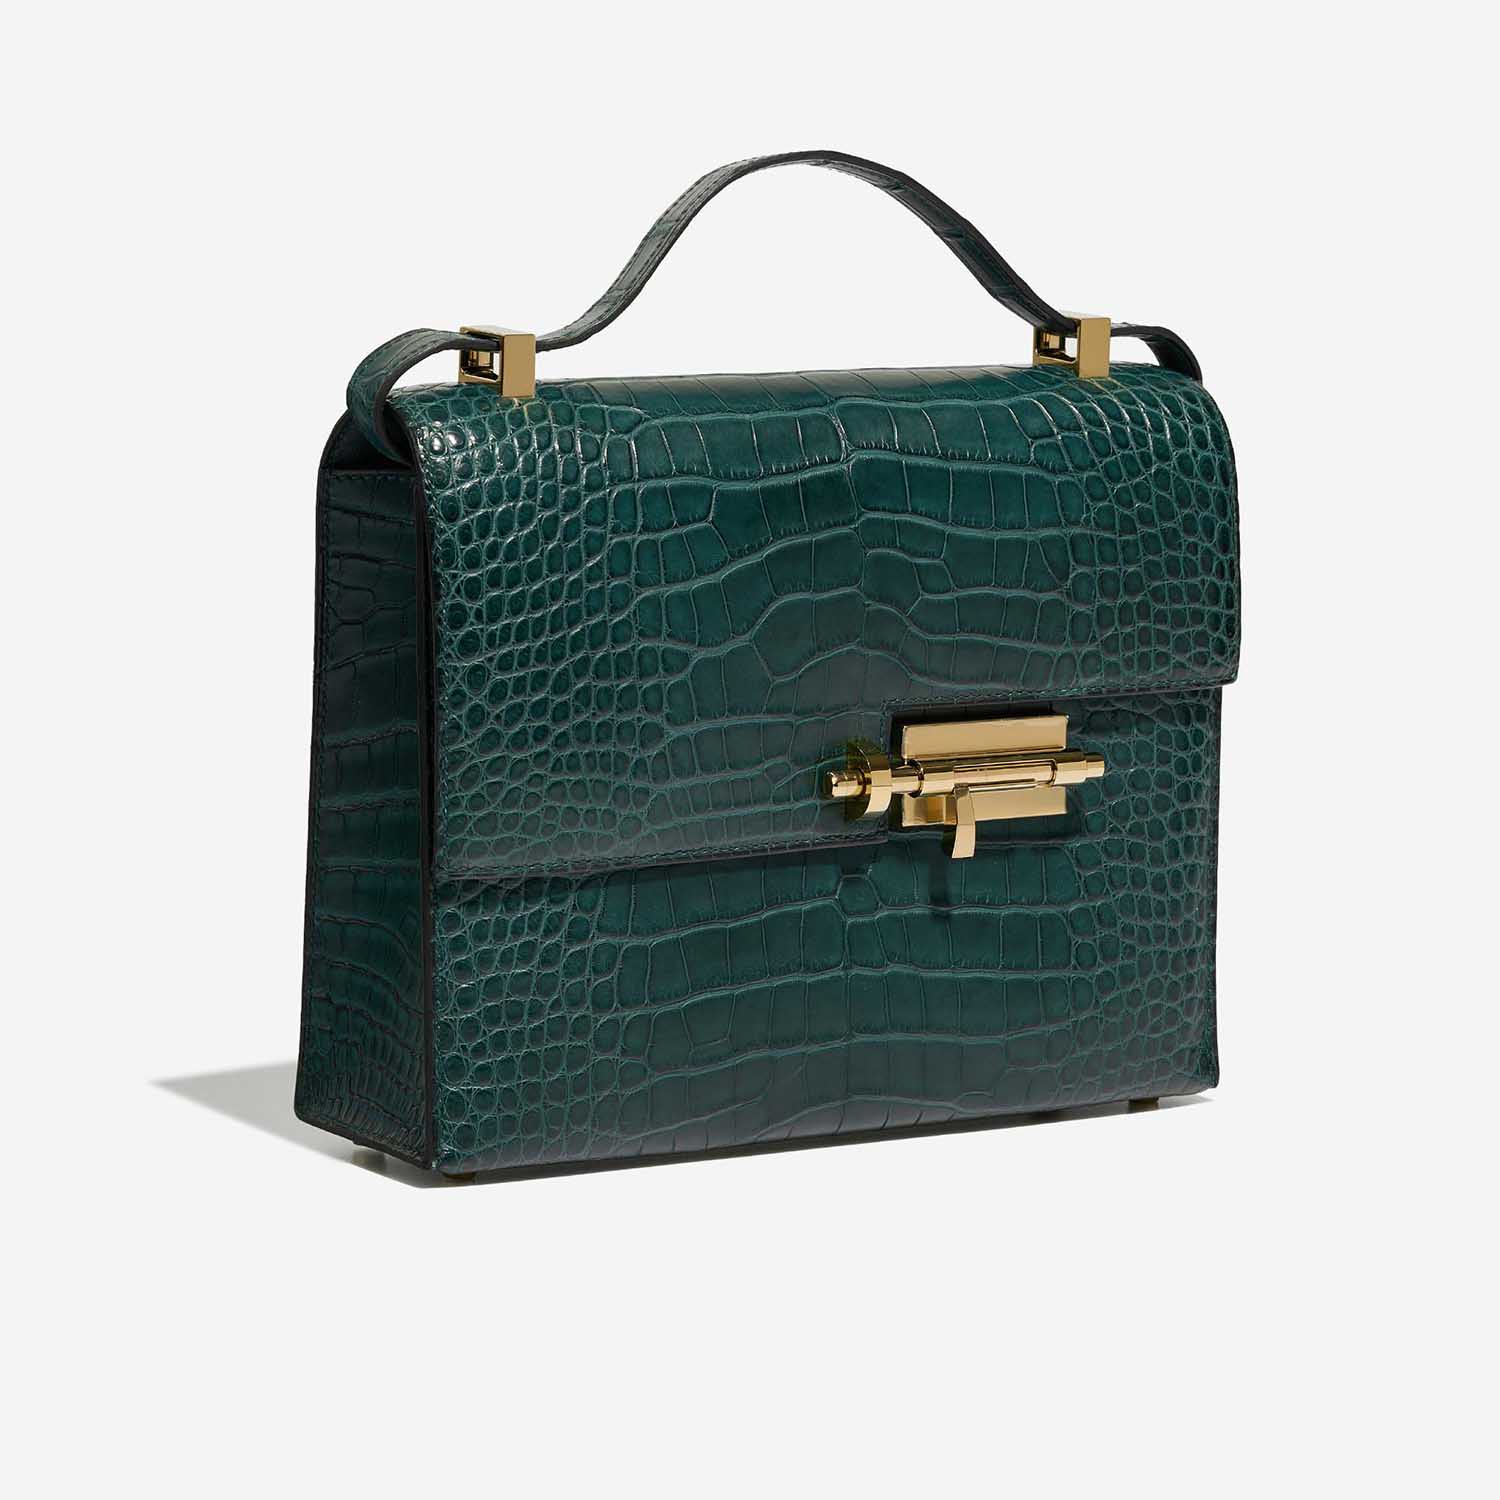 Sac Hermès d'occasion Verrou 23 Alligator Mat Vert Malachite | Vendez votre sac de créateur sur Saclab.com